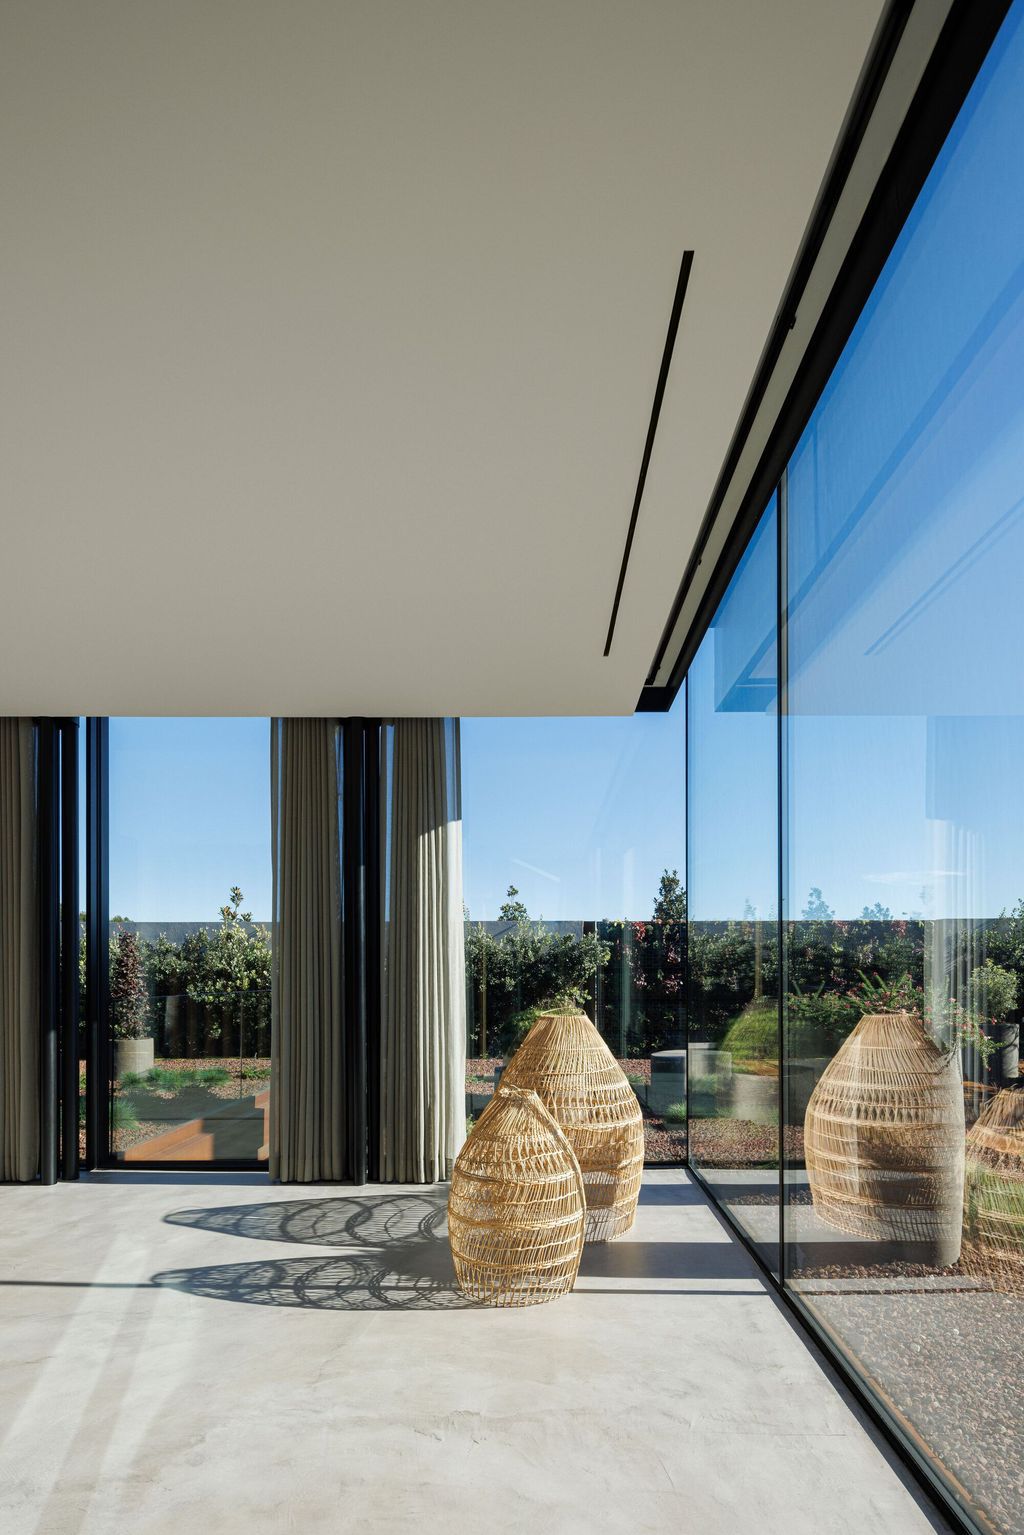 Casa de Lavra in Portugal Designed by Ricardo Azevedo Arquitecto